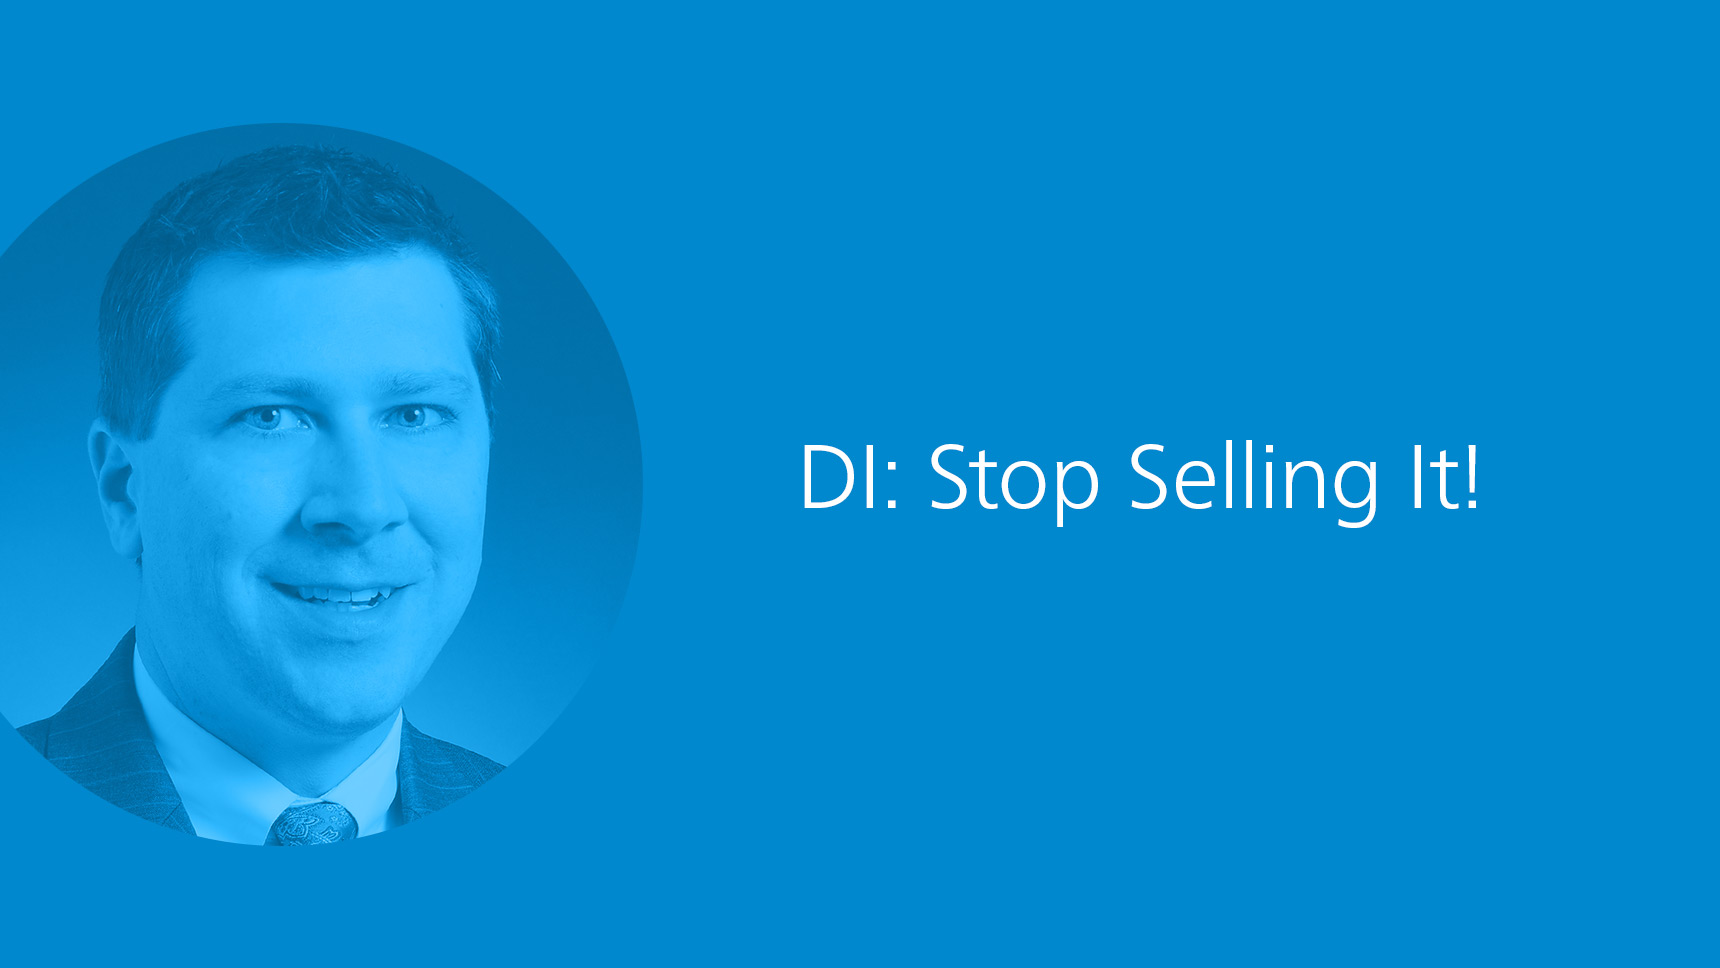 DI: Stop Selling It!